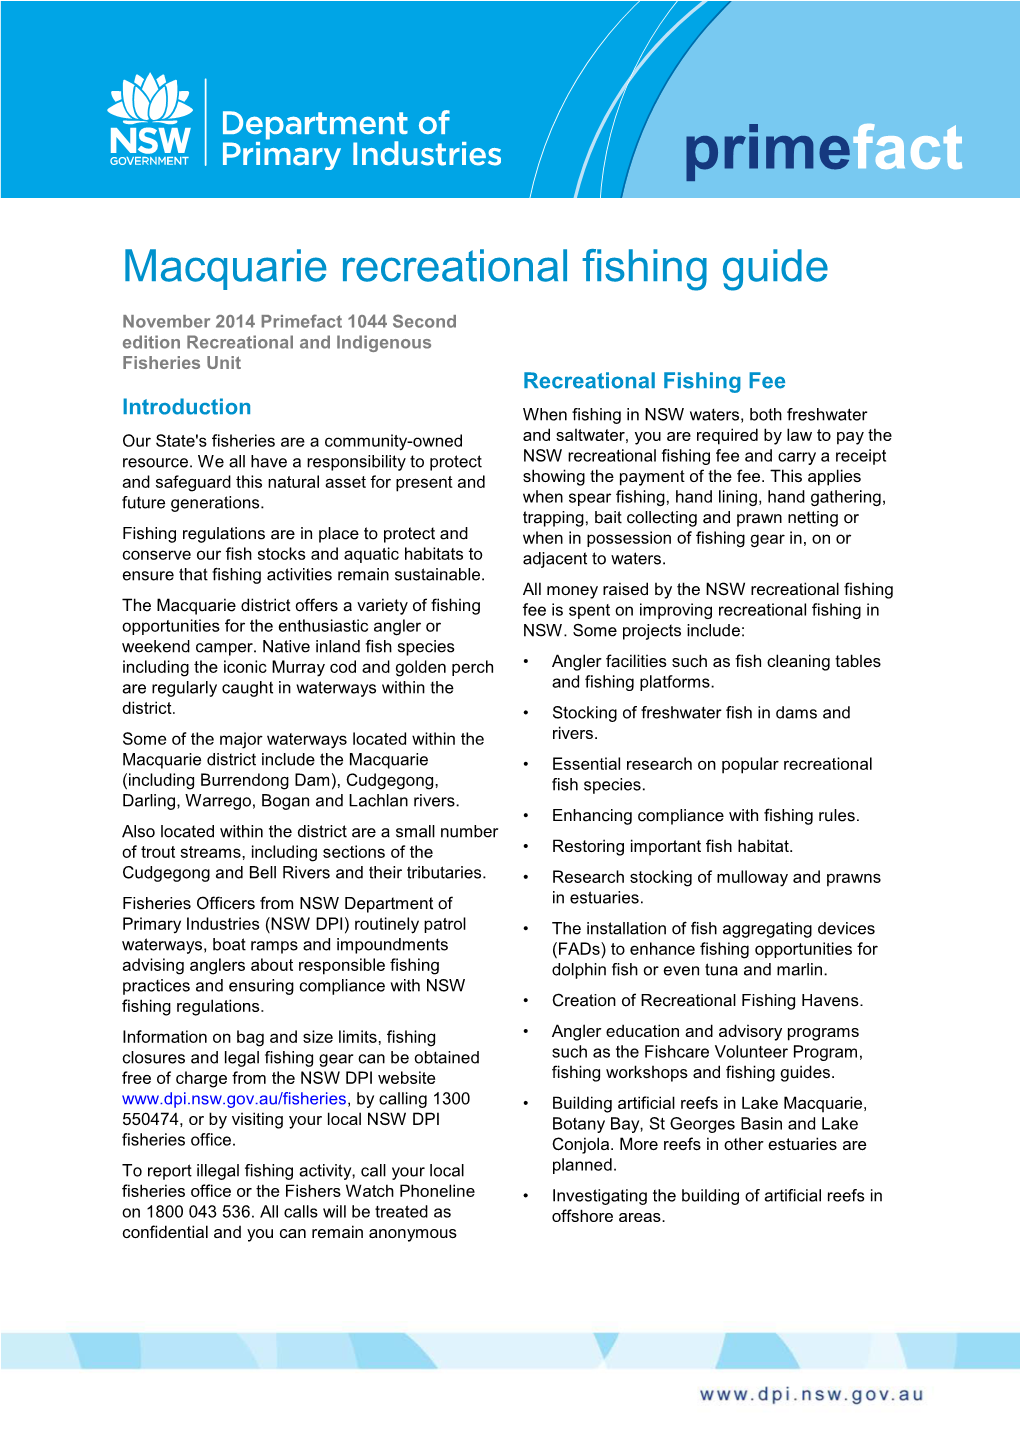 Macquarie Recreational Fishing Guide